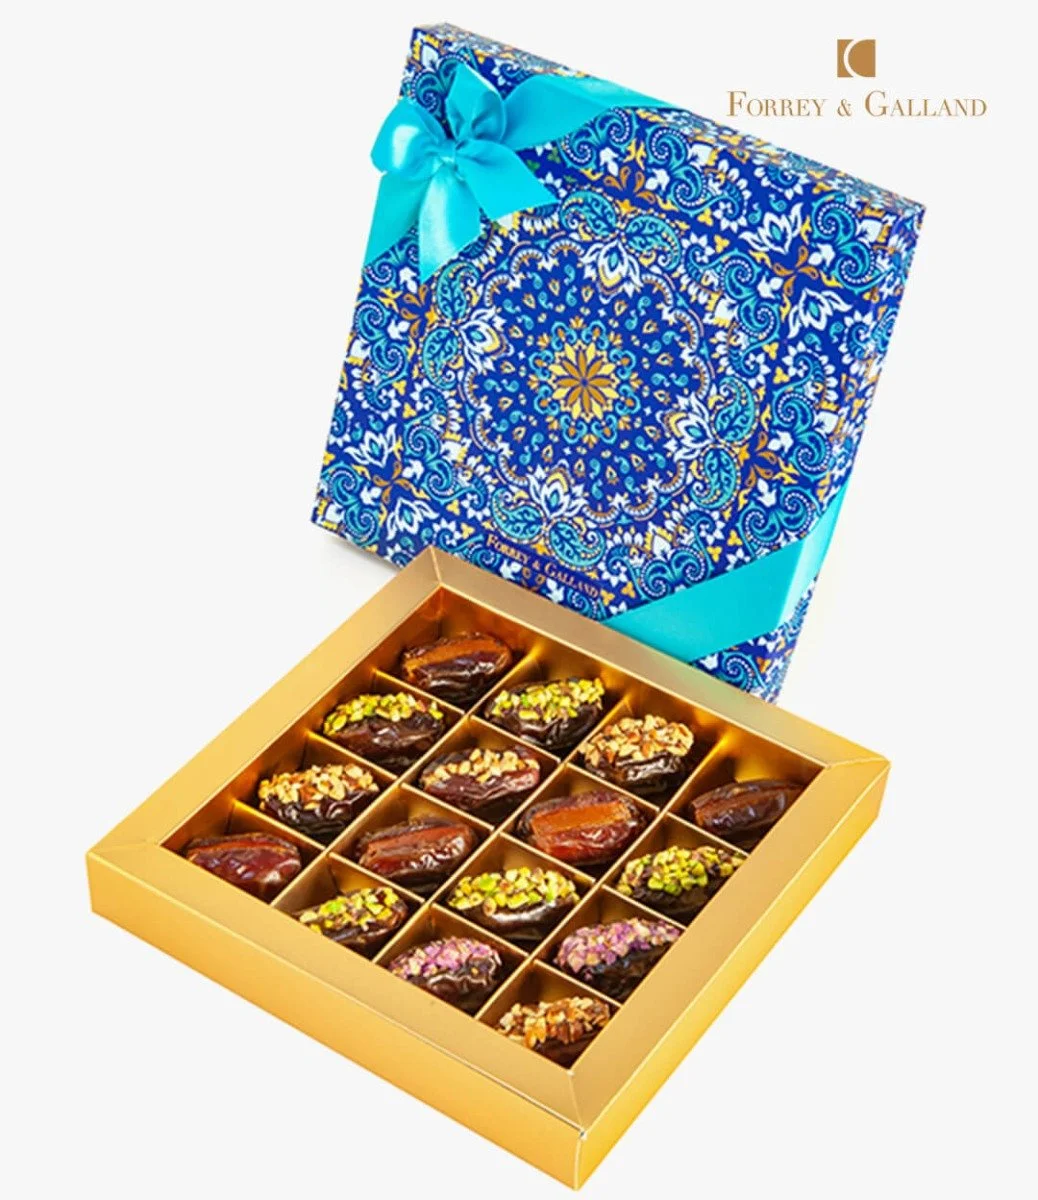 علبة تمور متنوعة من 16 قطعة - مجموعة رمضان من فوري وجالاند 